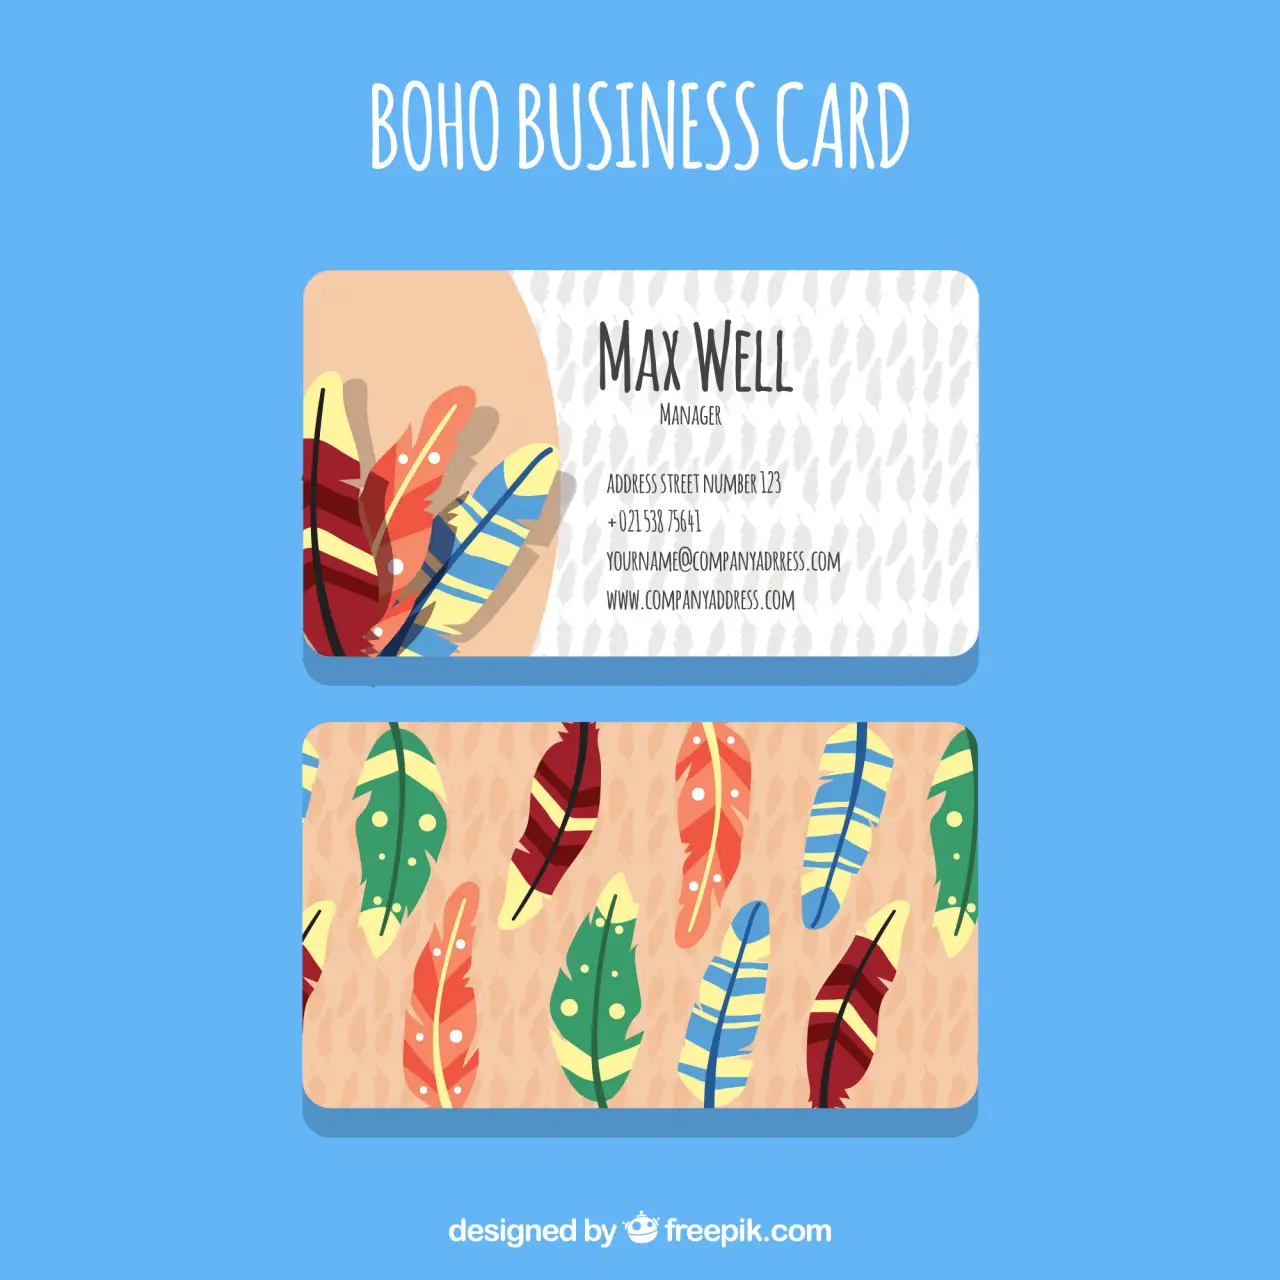 客製化悠遊卡,造型悠遊卡